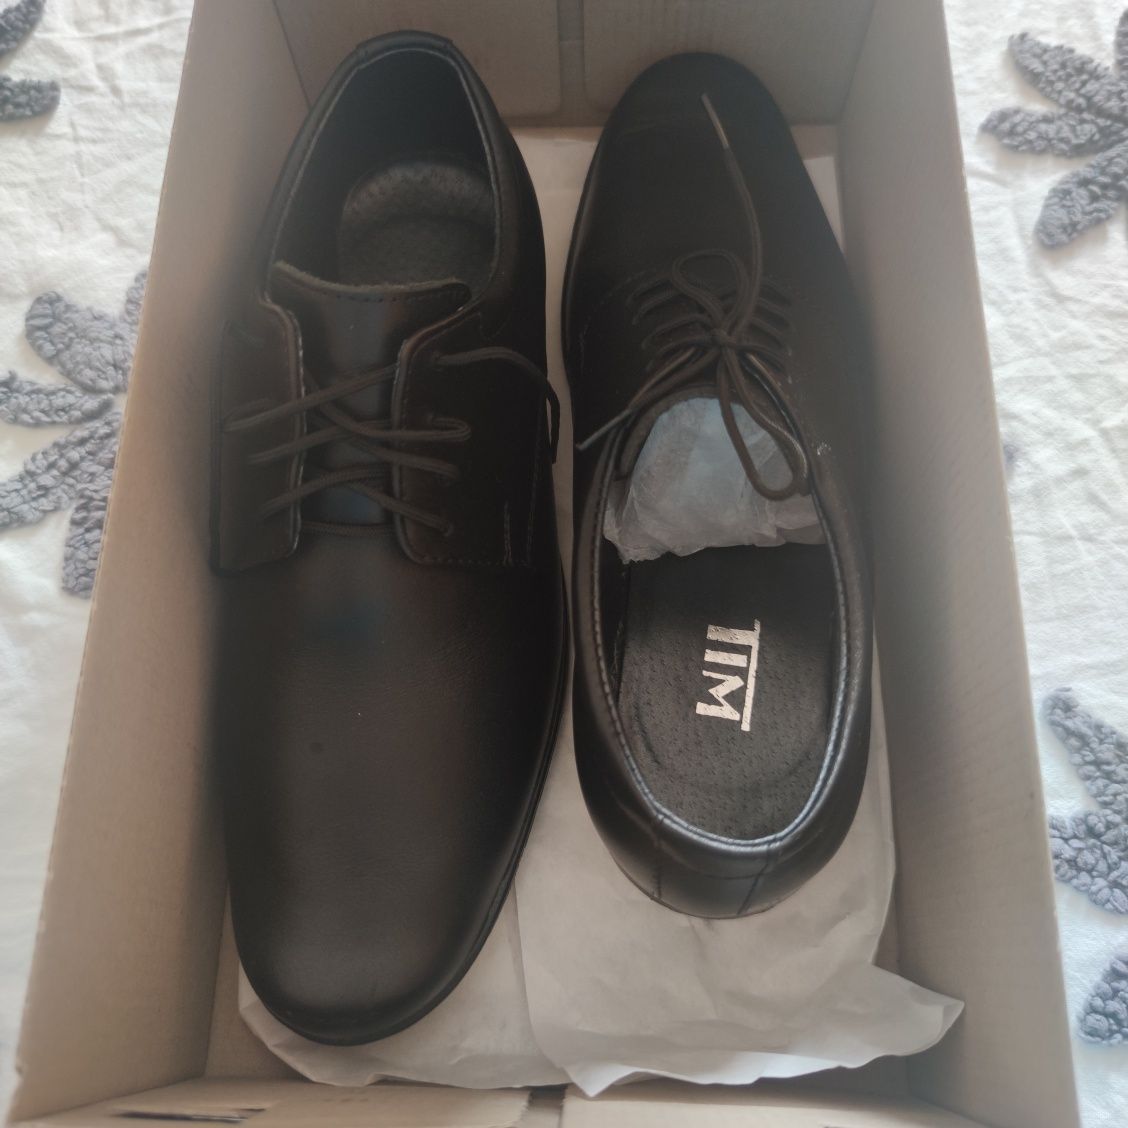 Buty skórzane do garnituru chłopięce TIM roz. 34 (wkładka 23 cm)czarne